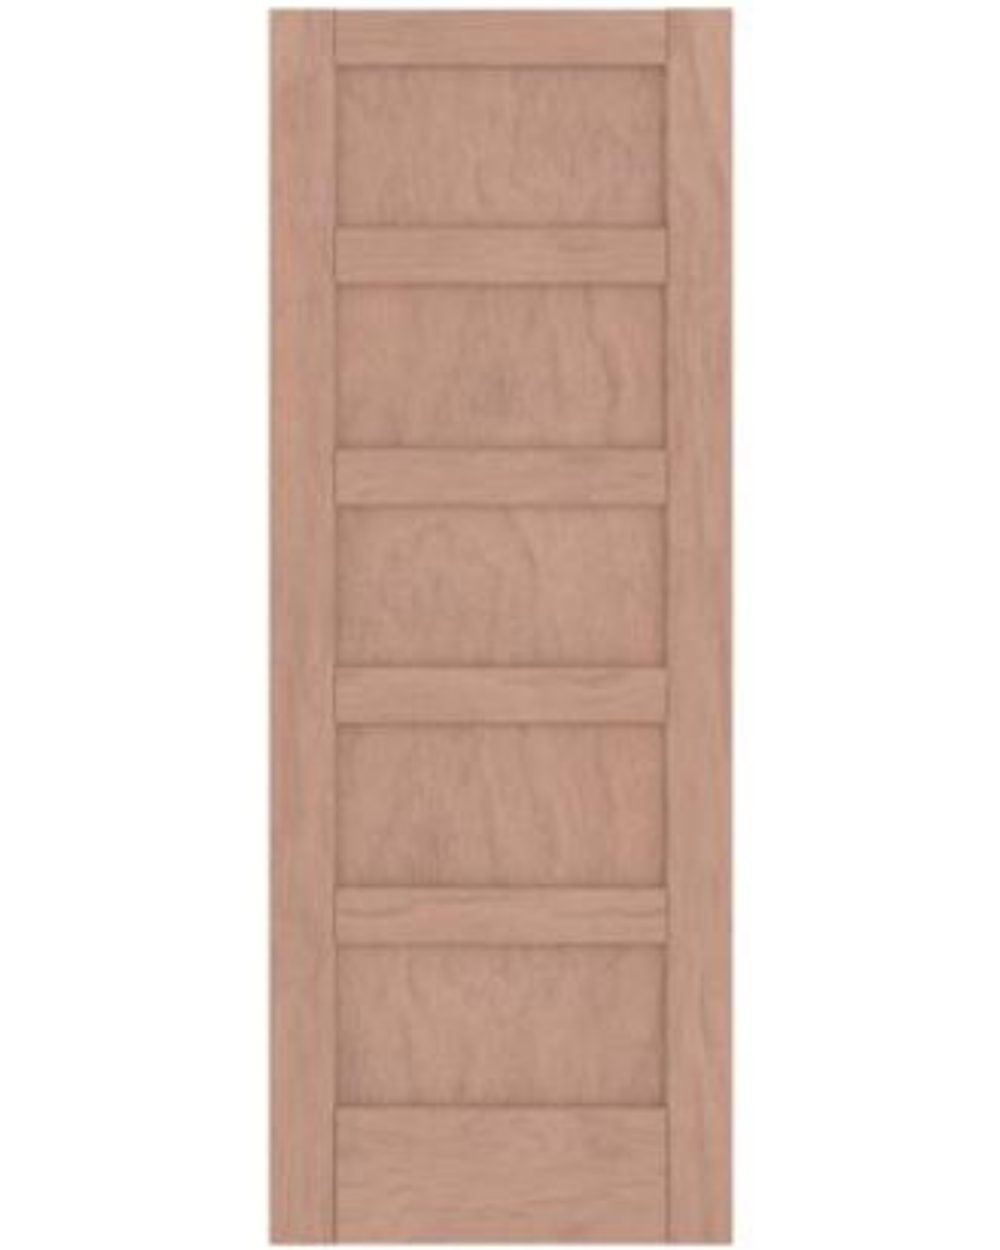 5 Panel Shaker Style (Mahogany)